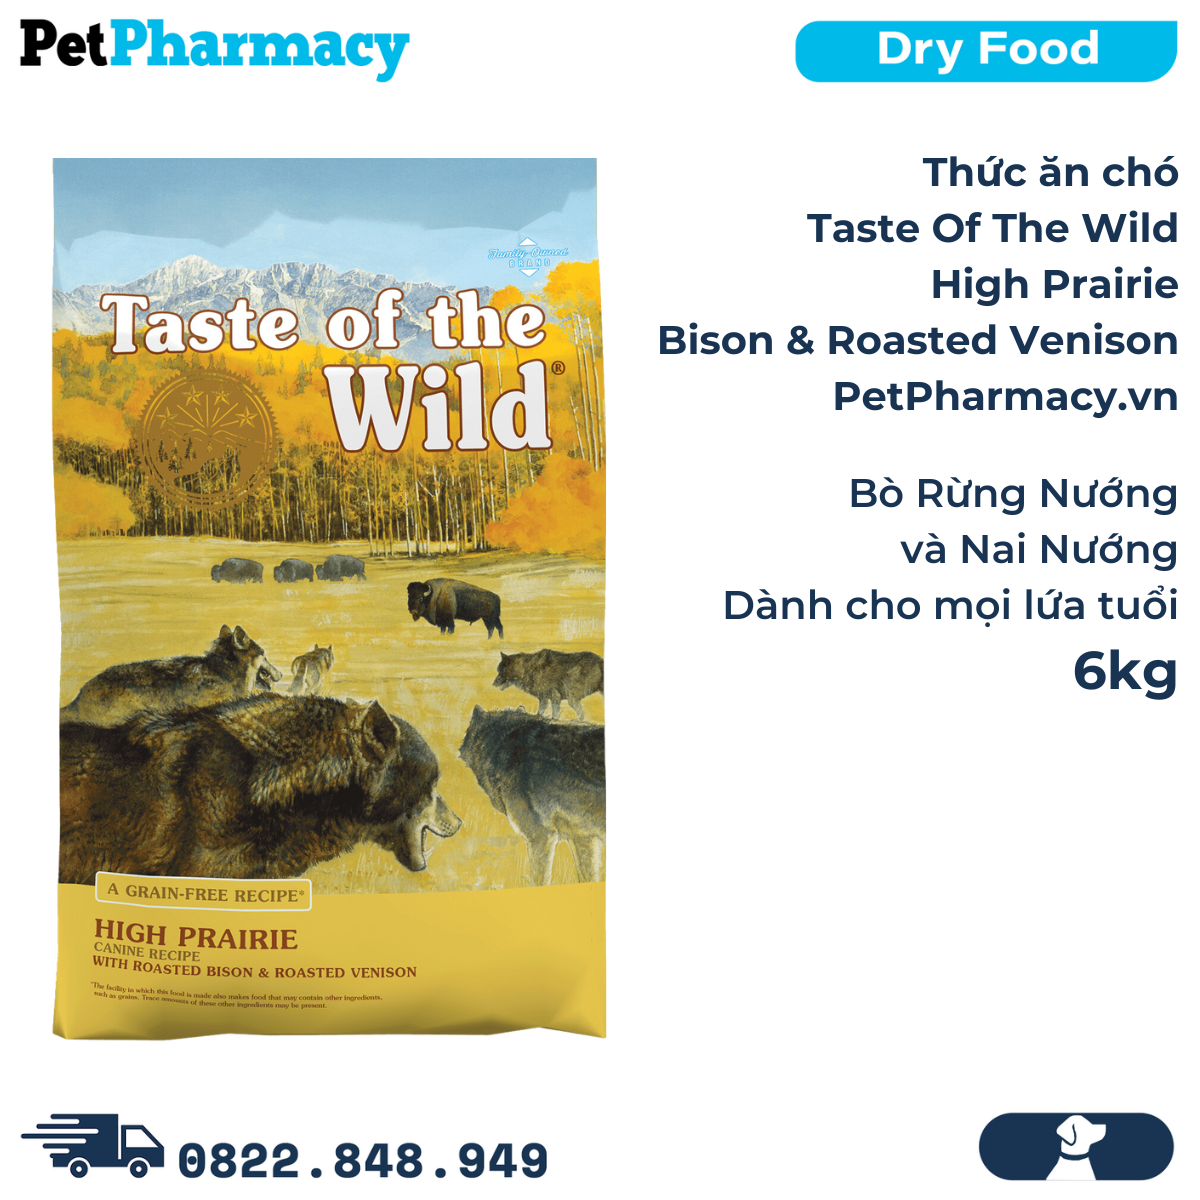  Thức ăn chó Taste Of The Wild High Prairie 6kg - Bison & Roasted Venison, Bò Rừng Nướng & Nai Nướng - Cho chó mọi lứa tuổi, nhập USA 